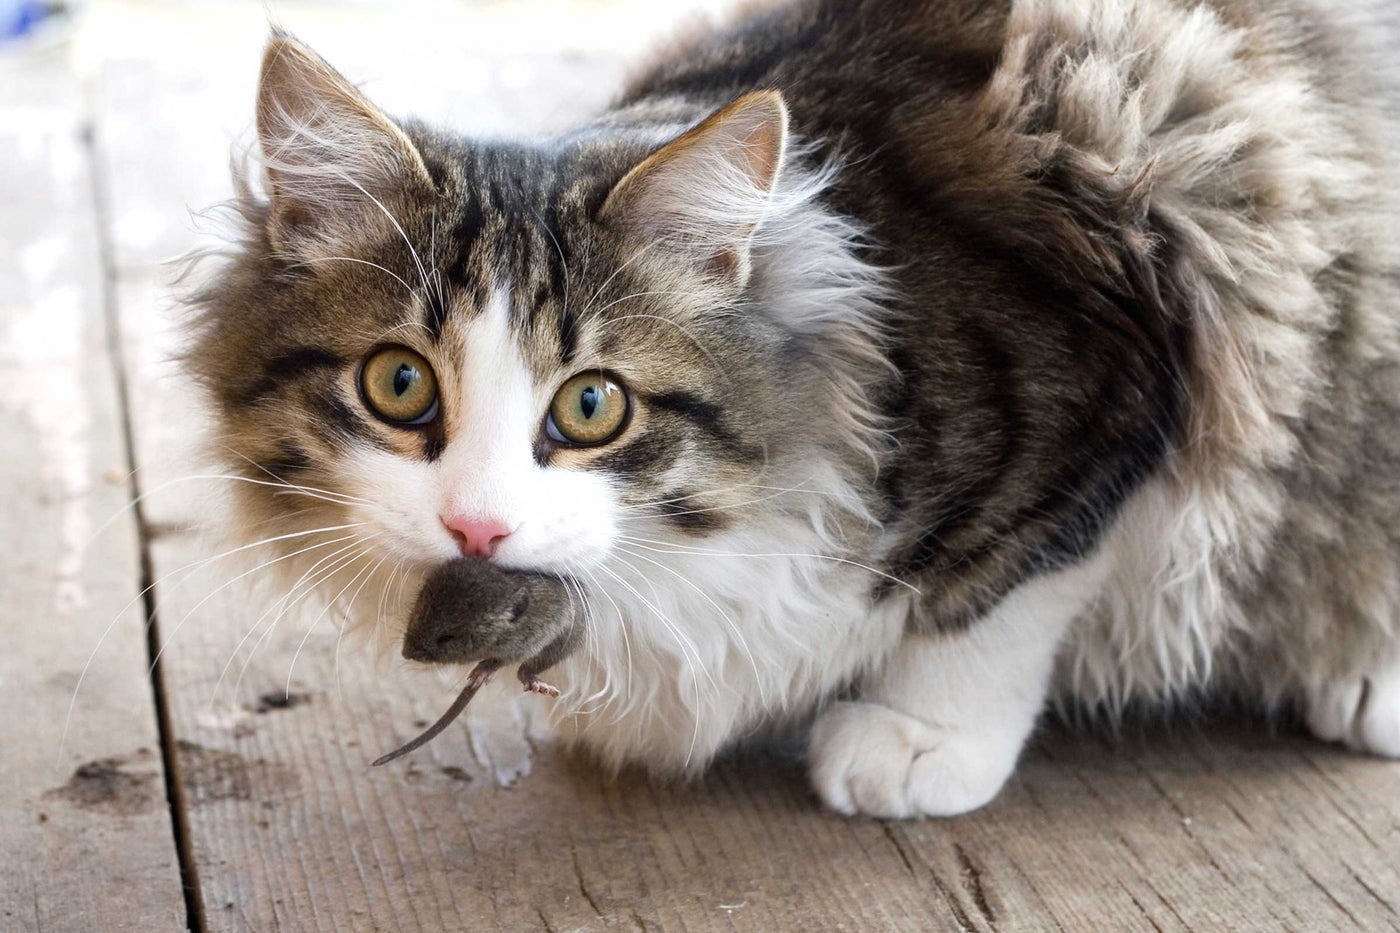 CATtitude: Common Cat Behavior Concerns